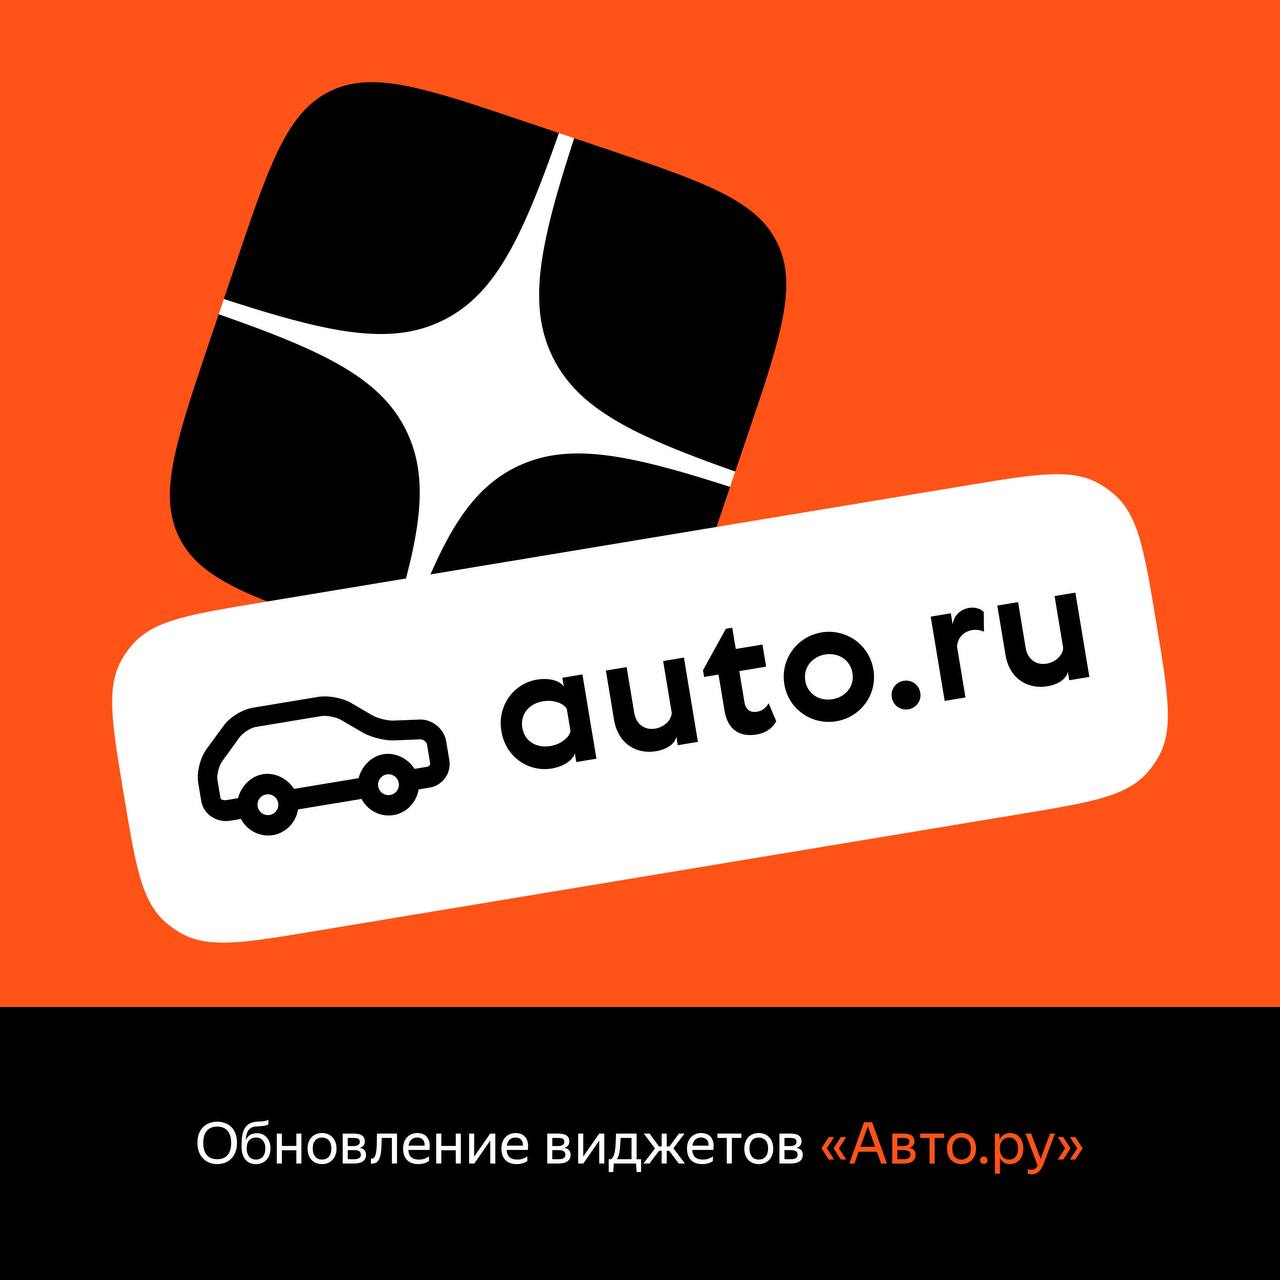 Виджеты Авто.ру стали доступны всем каналам Яндекс.Дзена